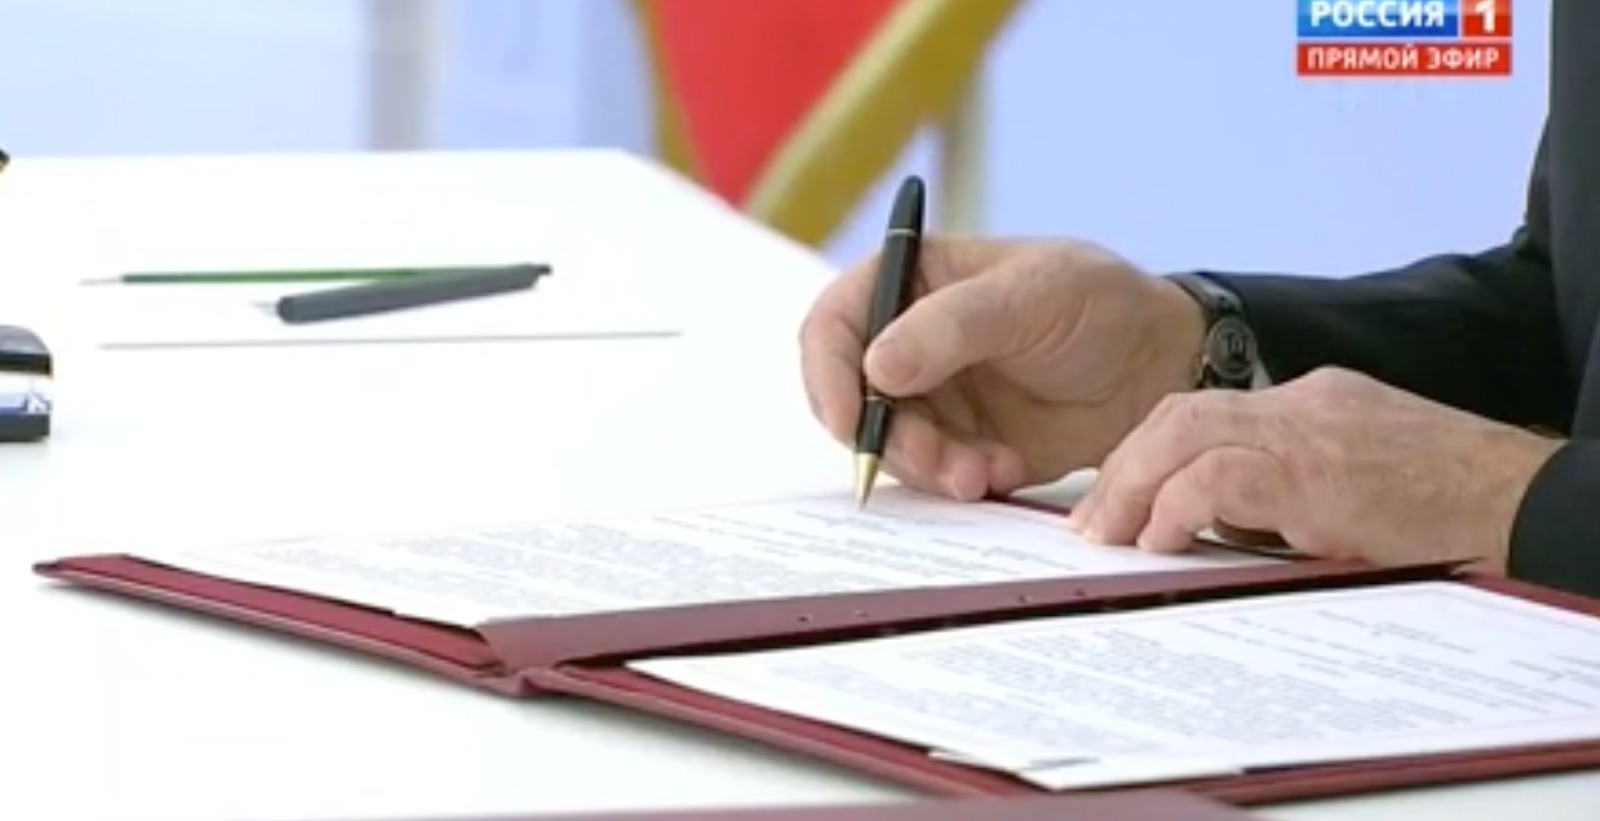 Podpis Putina pod dekretem o wcieleniu terenów okupowanych Ukrainy do Rosji. Fot. Pierwszy Kanał Telewizji Rosyjskiej.